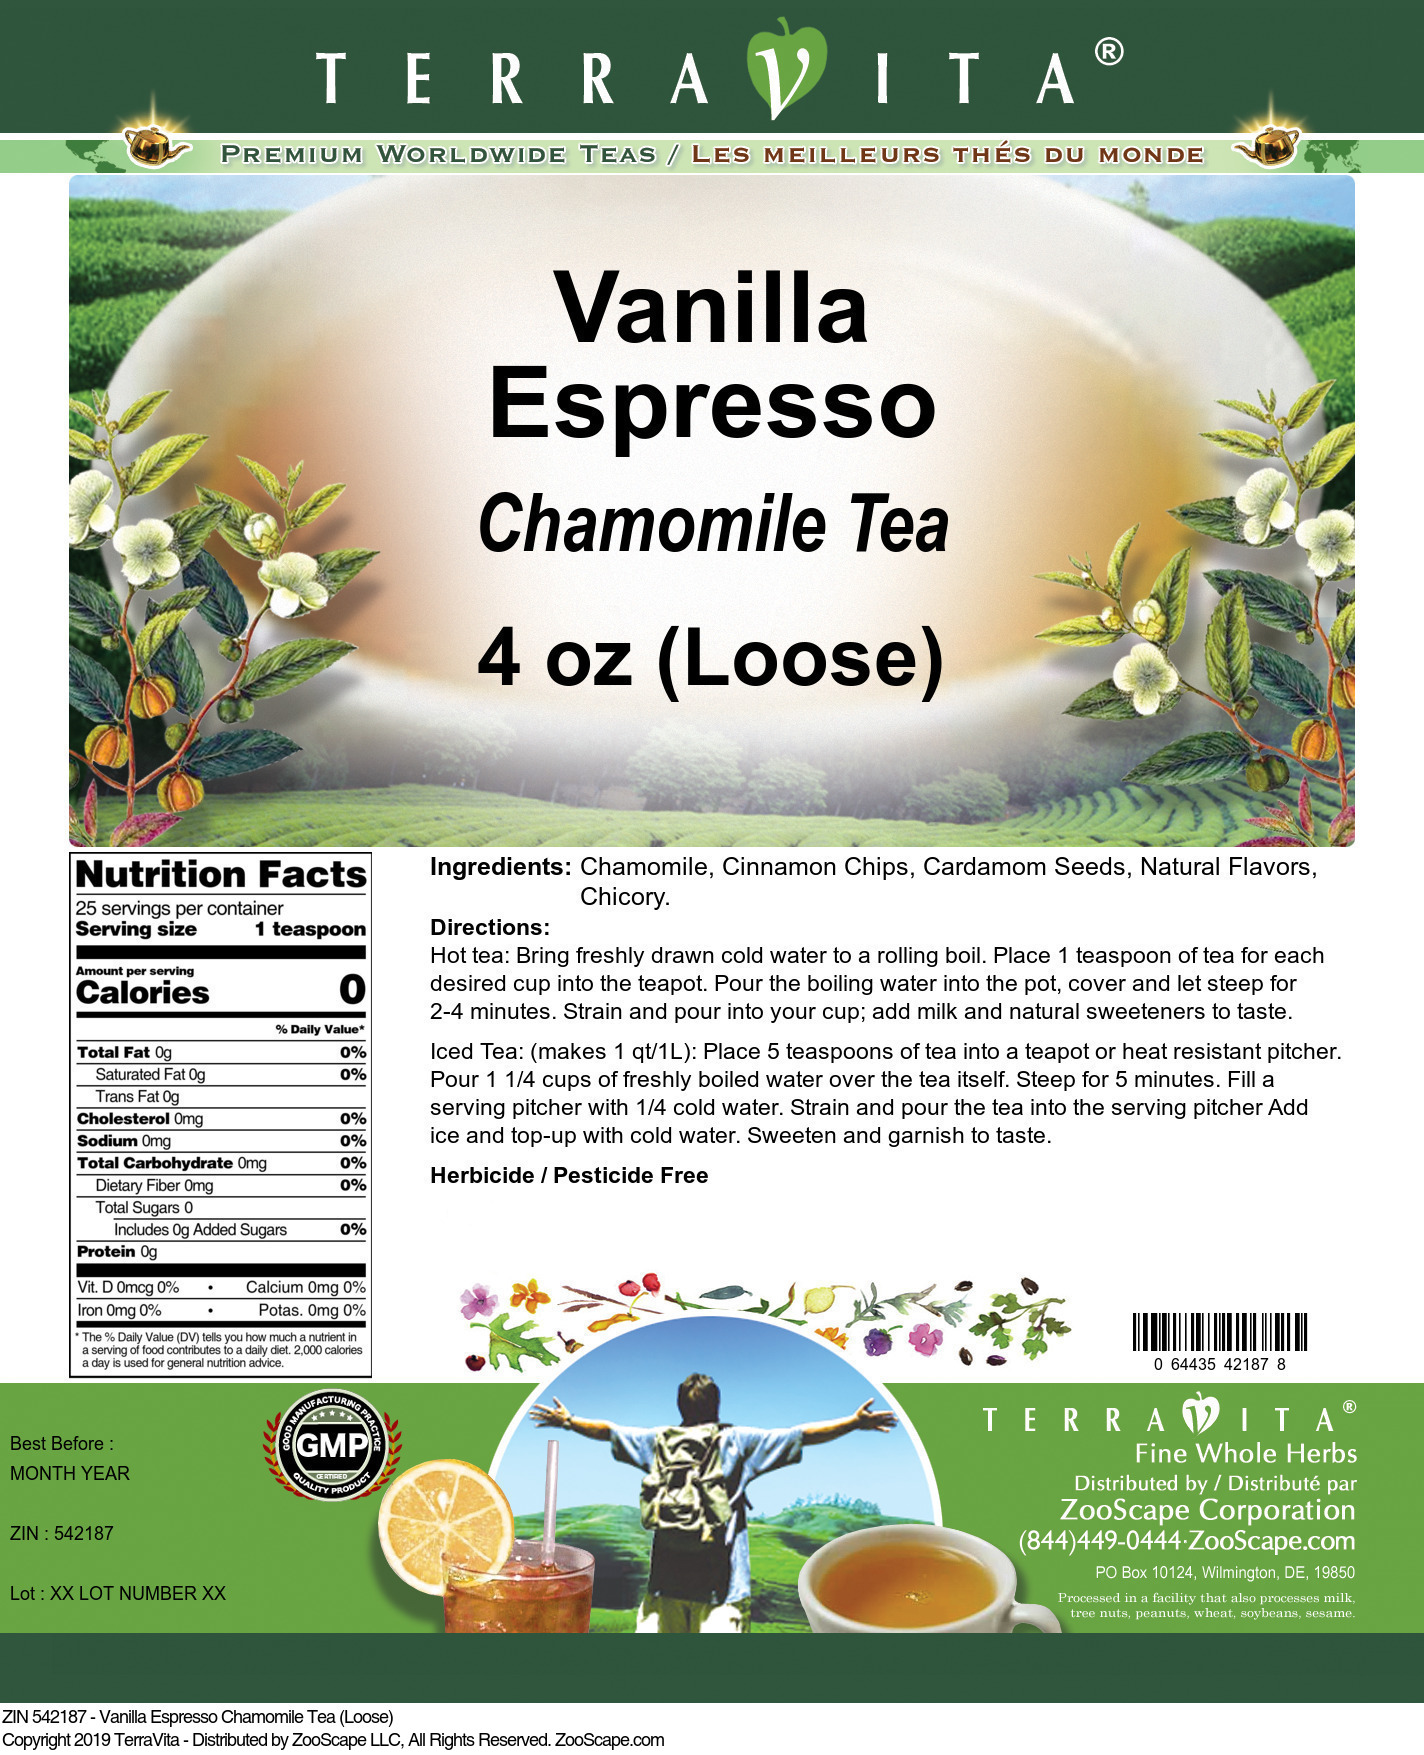 Vanilla Espresso Chamomile Tea (Loose) - Label